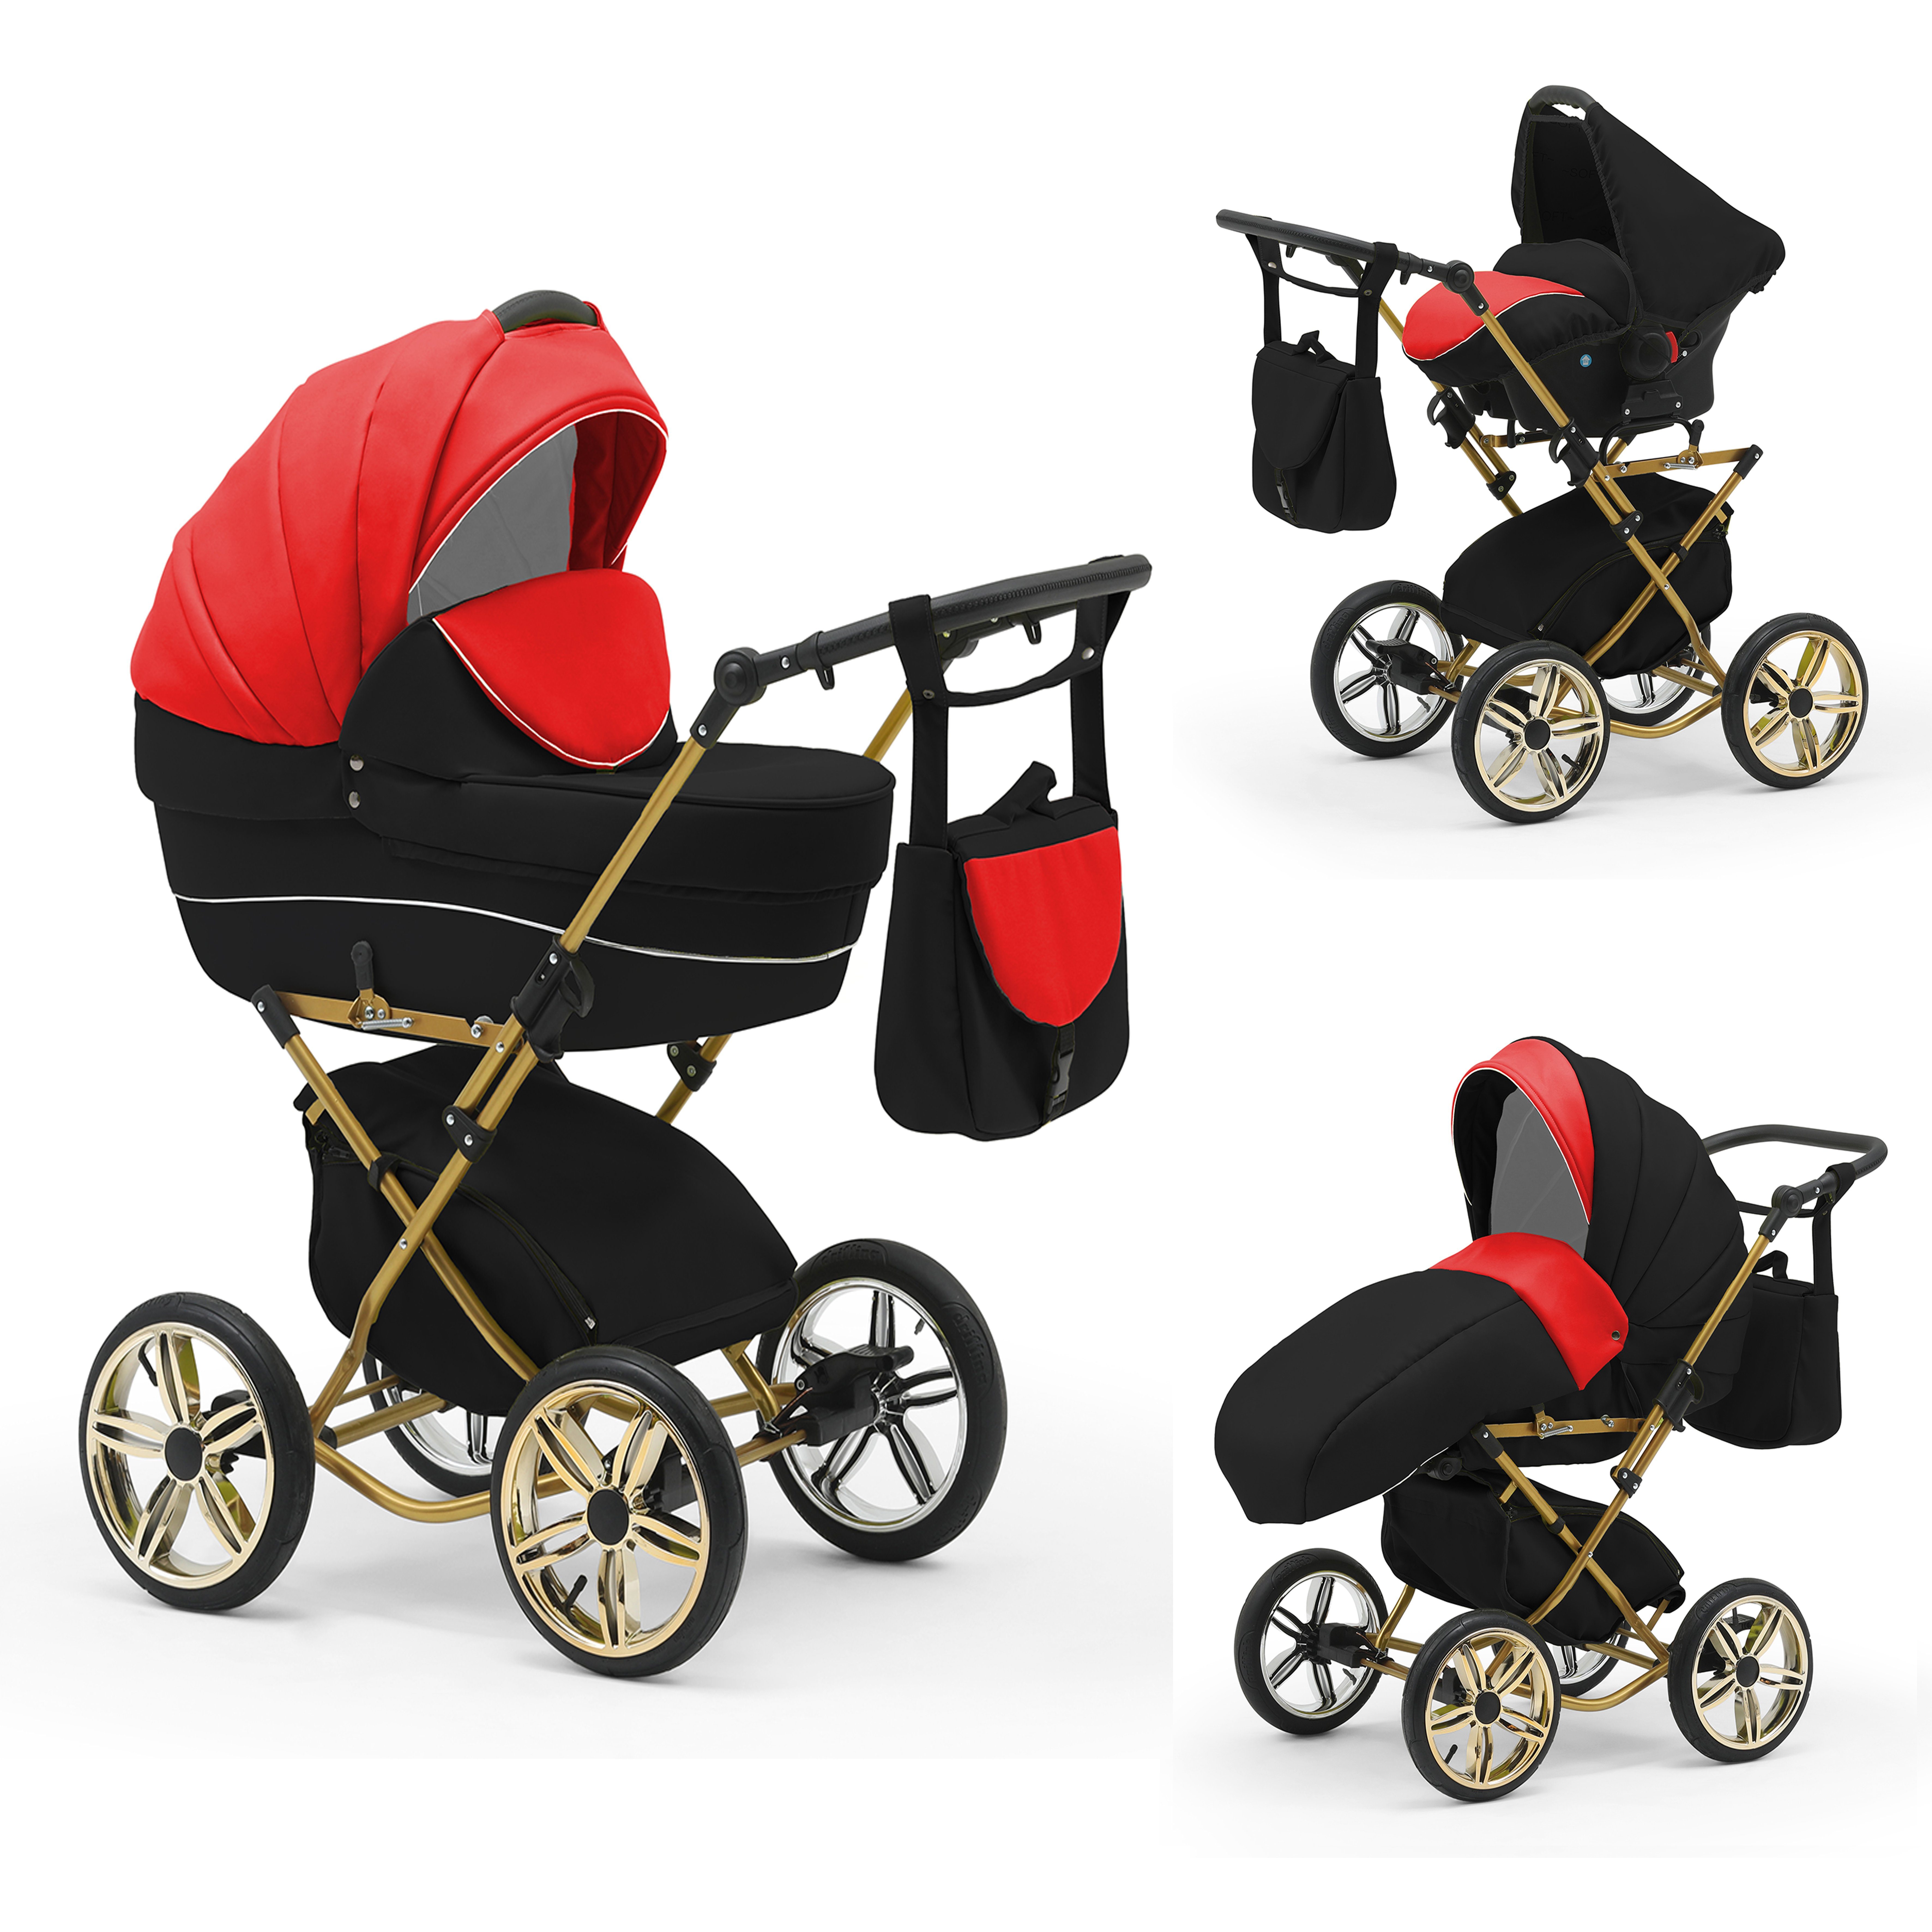 babies-on-wheels Kombi-Kinderwagen Sorento 3 in 1 inkl. Autositz - 13 Teile - in 10 Designs Rot-Schwarz